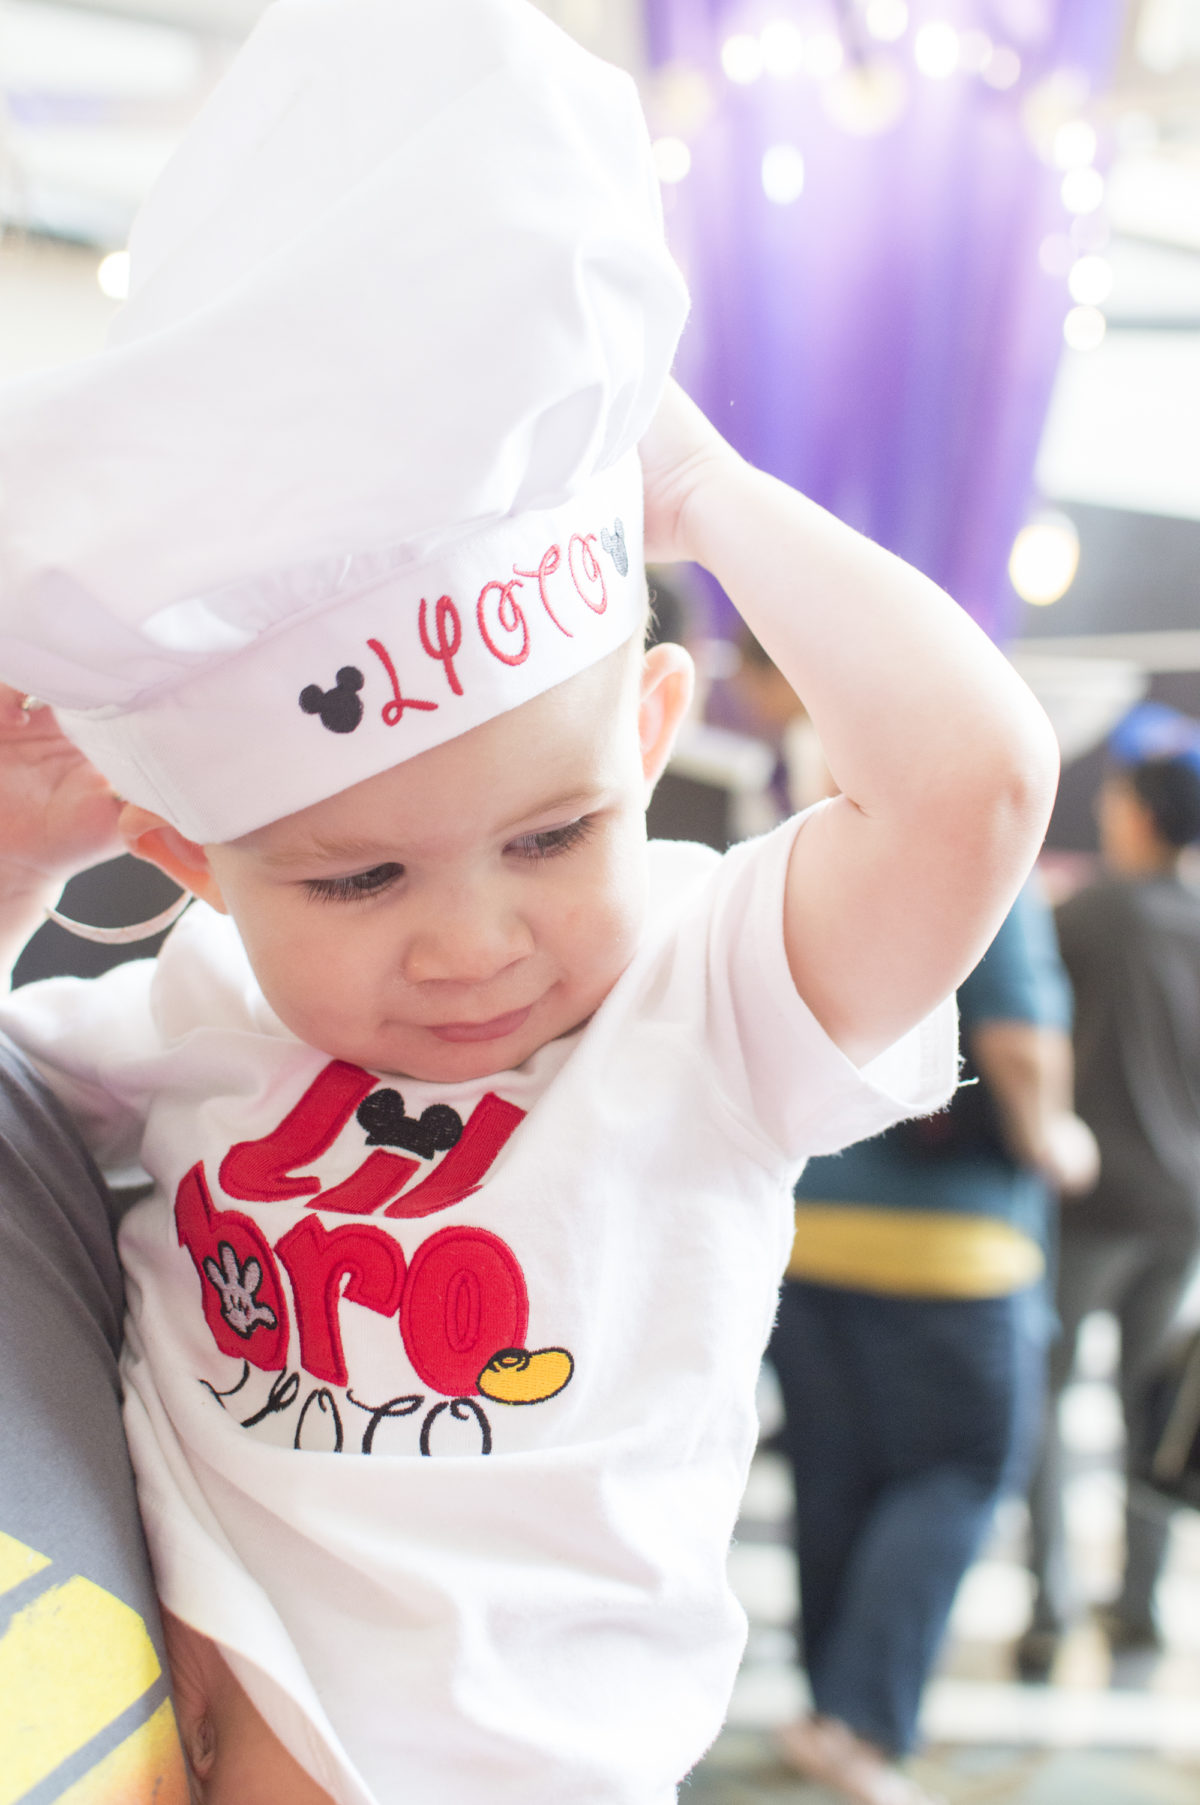 Chef Hats at Disney